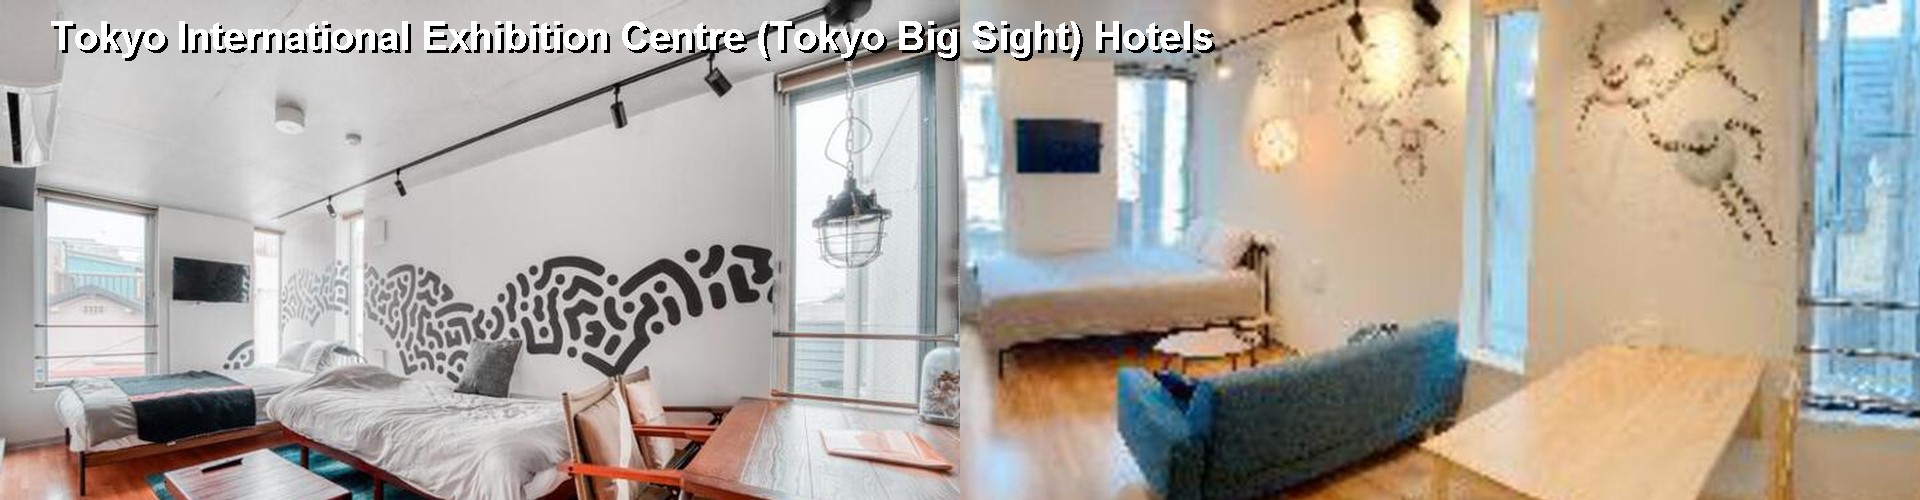 5 Best Hotels near Tokyo International Exhibition Centre (Tokyo Big Sight)